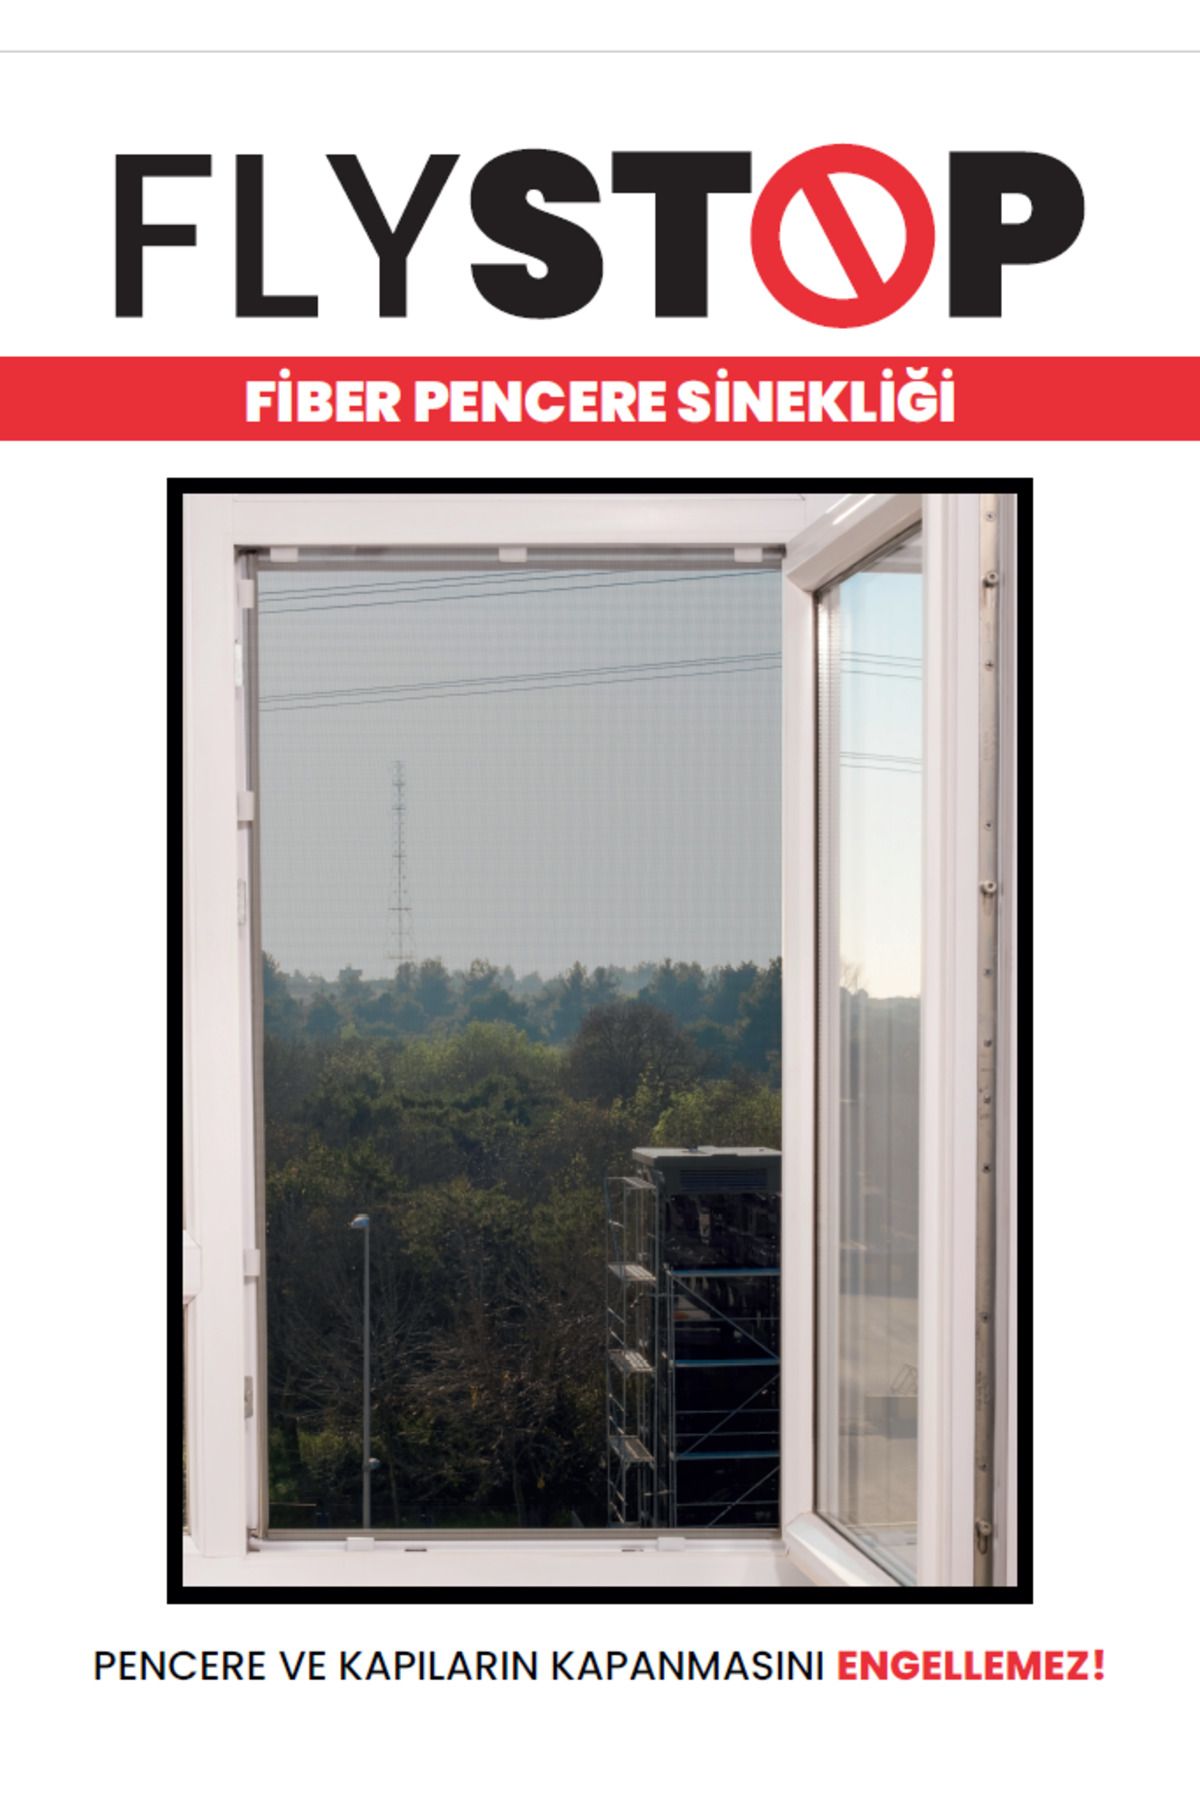 KeskinPazarlama Flystop Aparatlı Fiberglass Pencere Sinekliği ÖZEL ÖLÇÜ